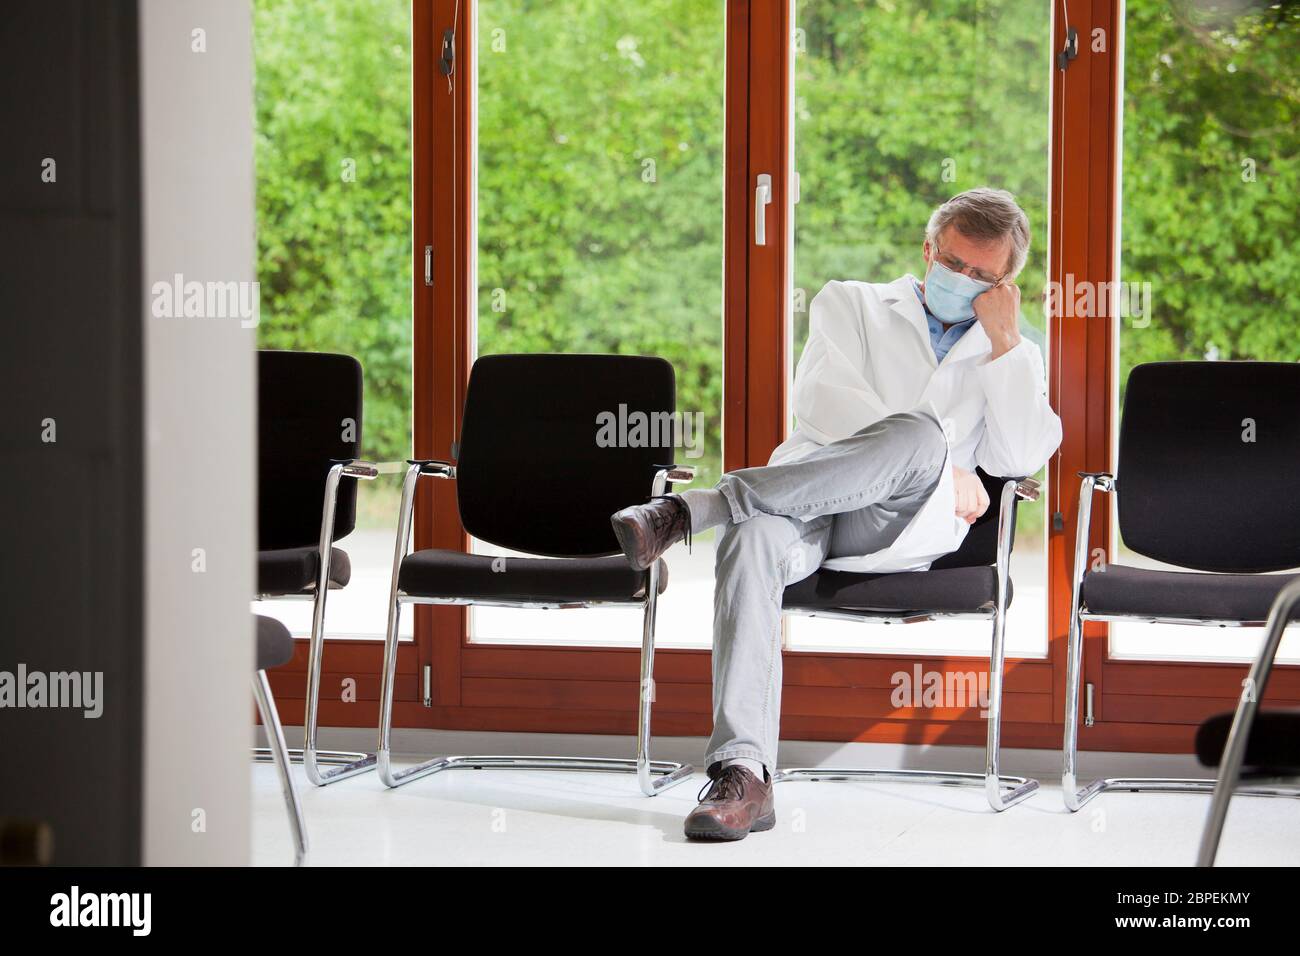 Médico con máscara de cara trabajando en una silla en una sala de espera vacía - fondo verde con plantas Foto de stock